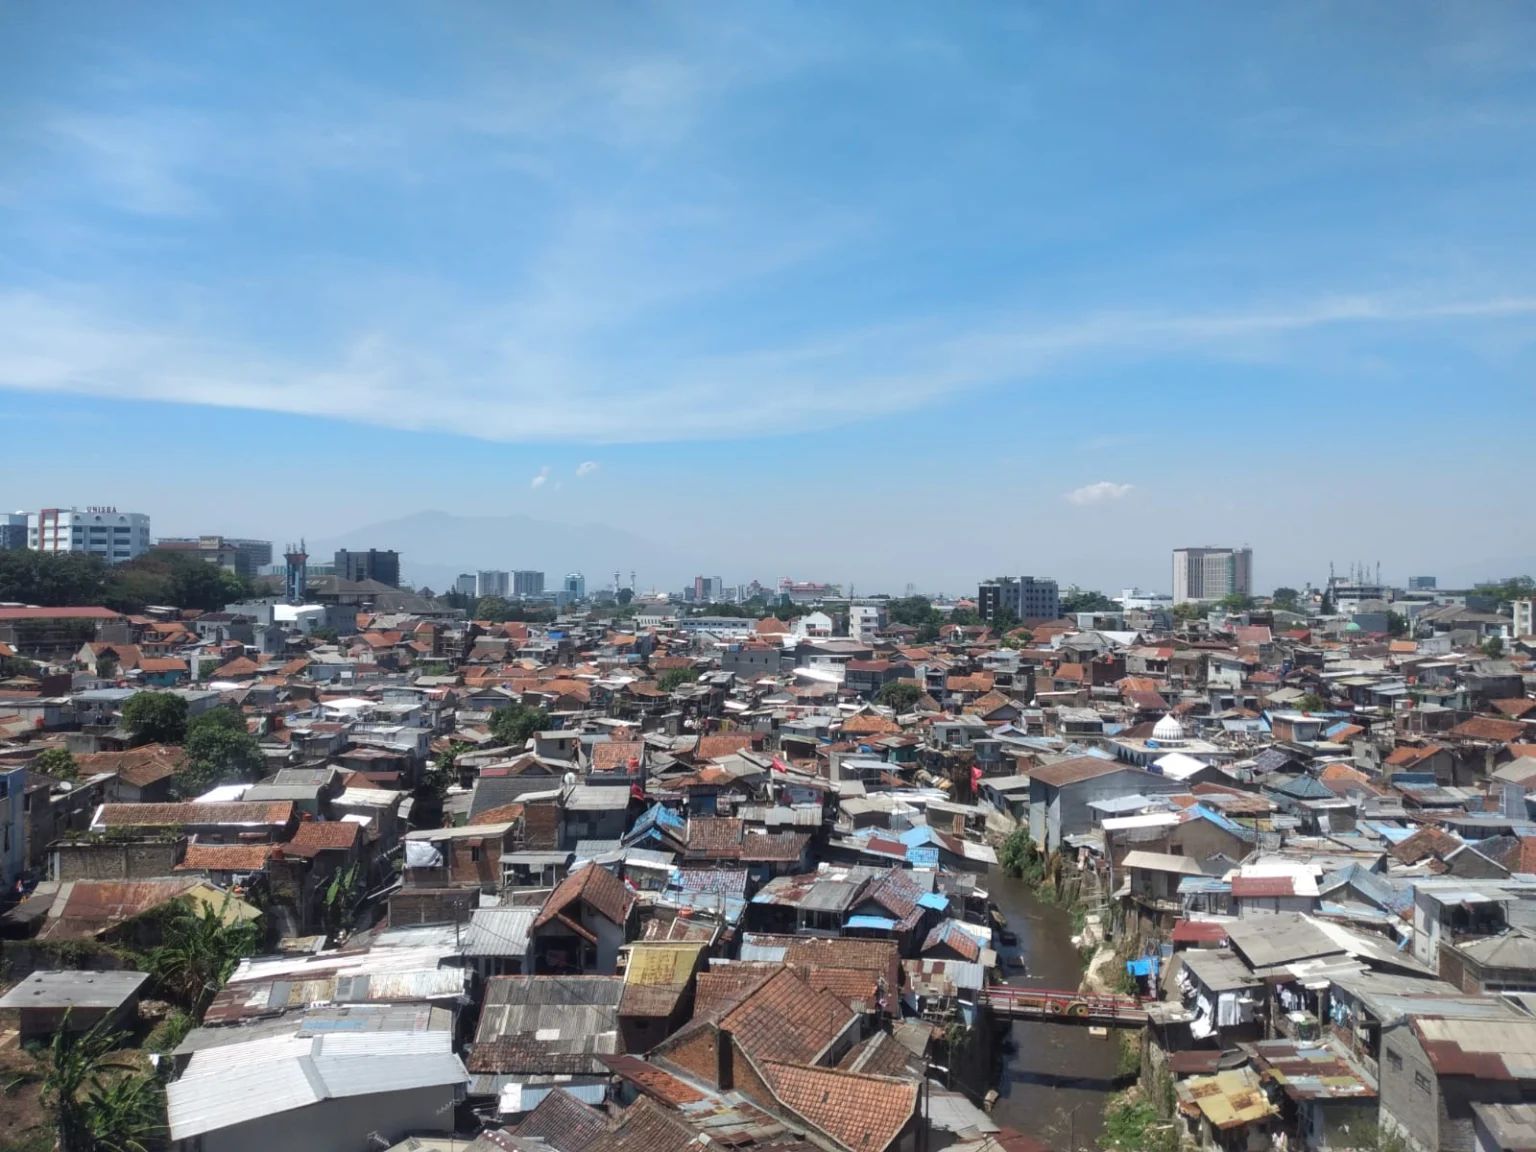 Ilustrasi kemiskinan di Kota Bandung (Sadam Husen / JE)